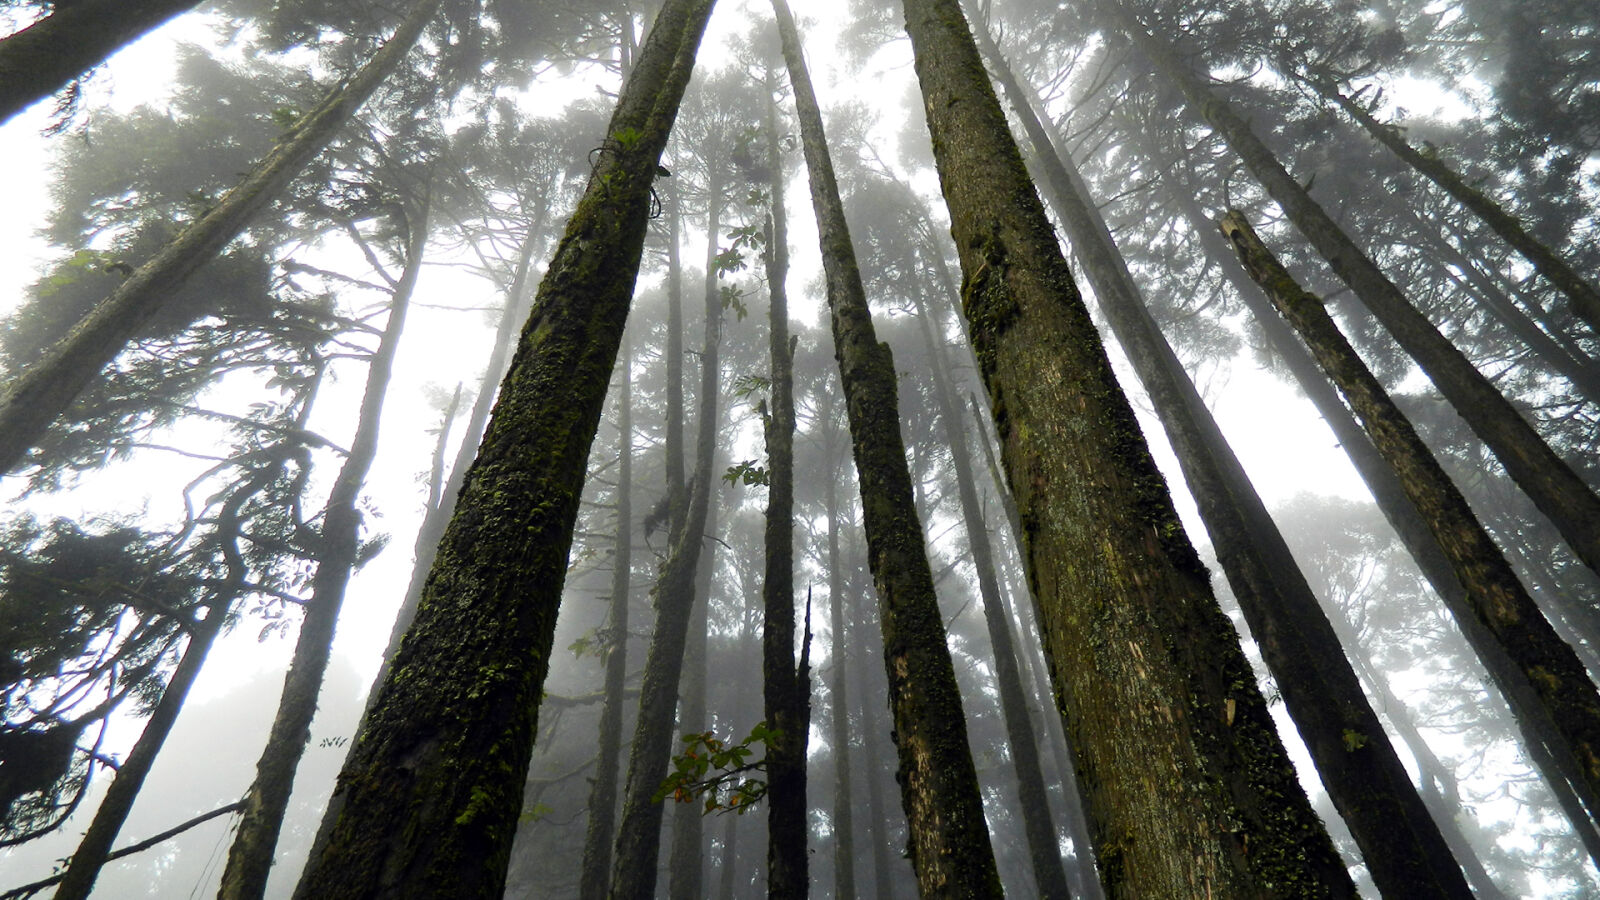 Nikon Coolpix L120 sample photo. Japan, suicide, forest photography